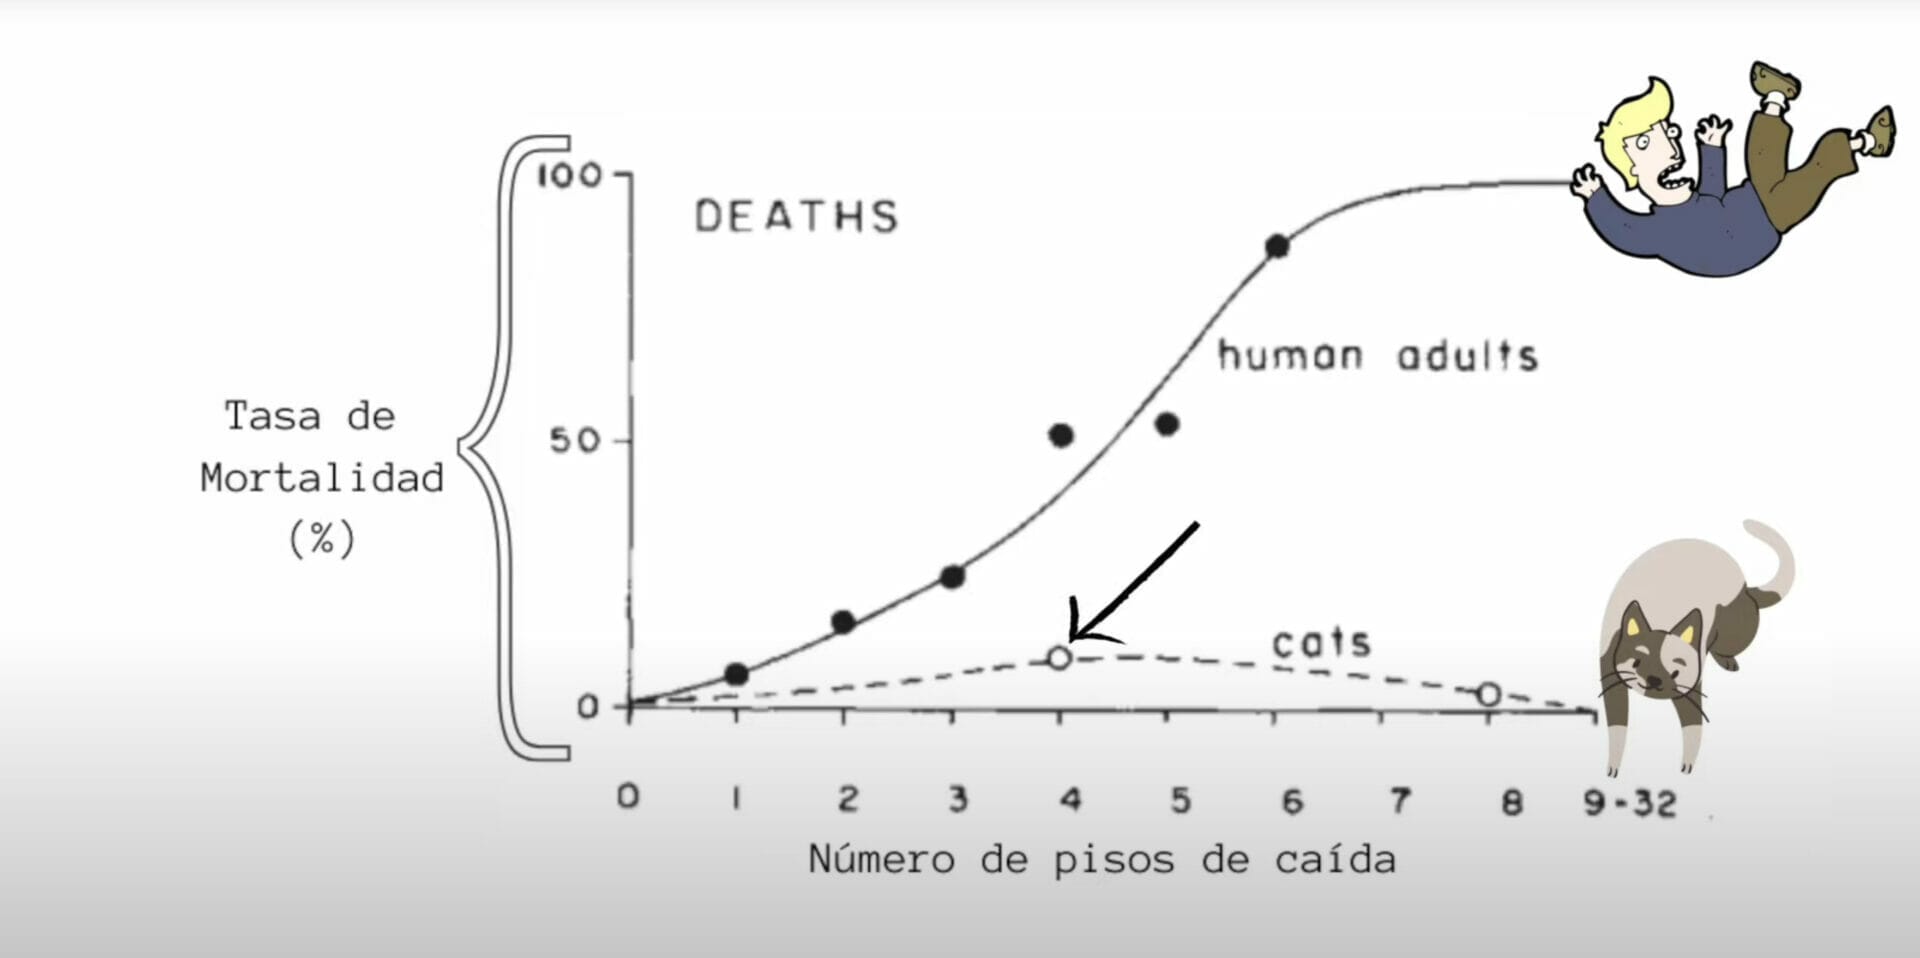 gráfica donde se puede apreciar la cantidad de muertes por caída entre un gato y un humano en referente al número de pisos